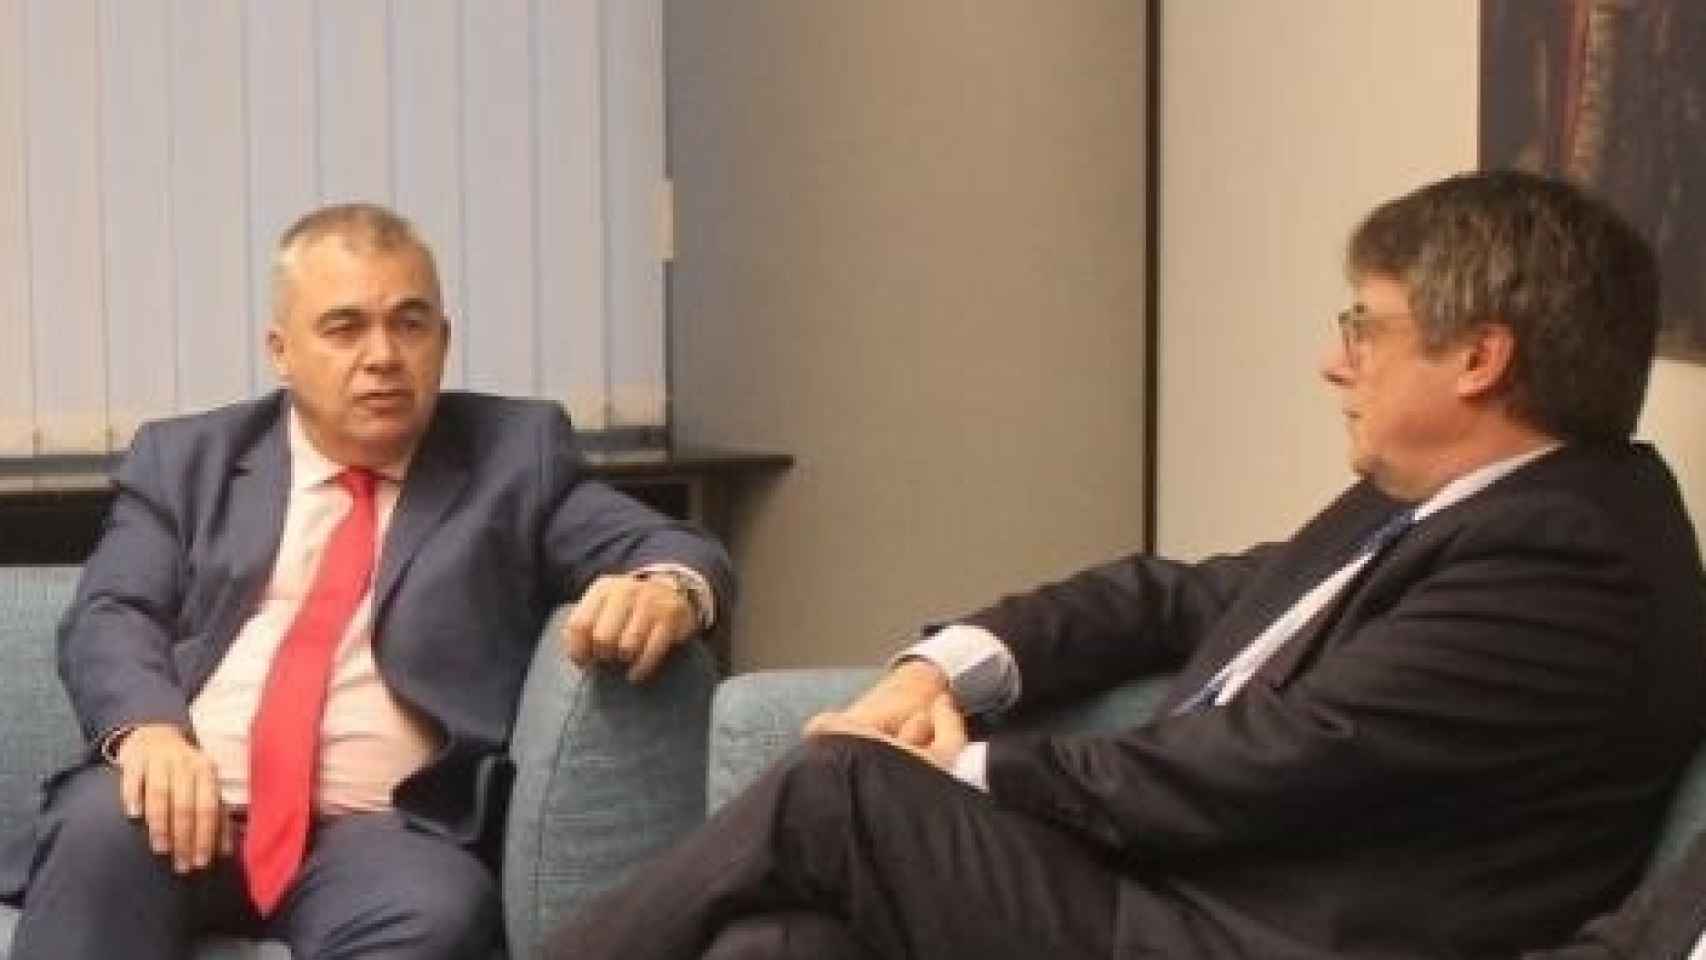 El secretario de Organización del PSOE, Santos Cerdán, y el expresidente de la Generalitat, Carles Puigdemont, el pasado 30 de octubre en Bruselas (Bélgica).